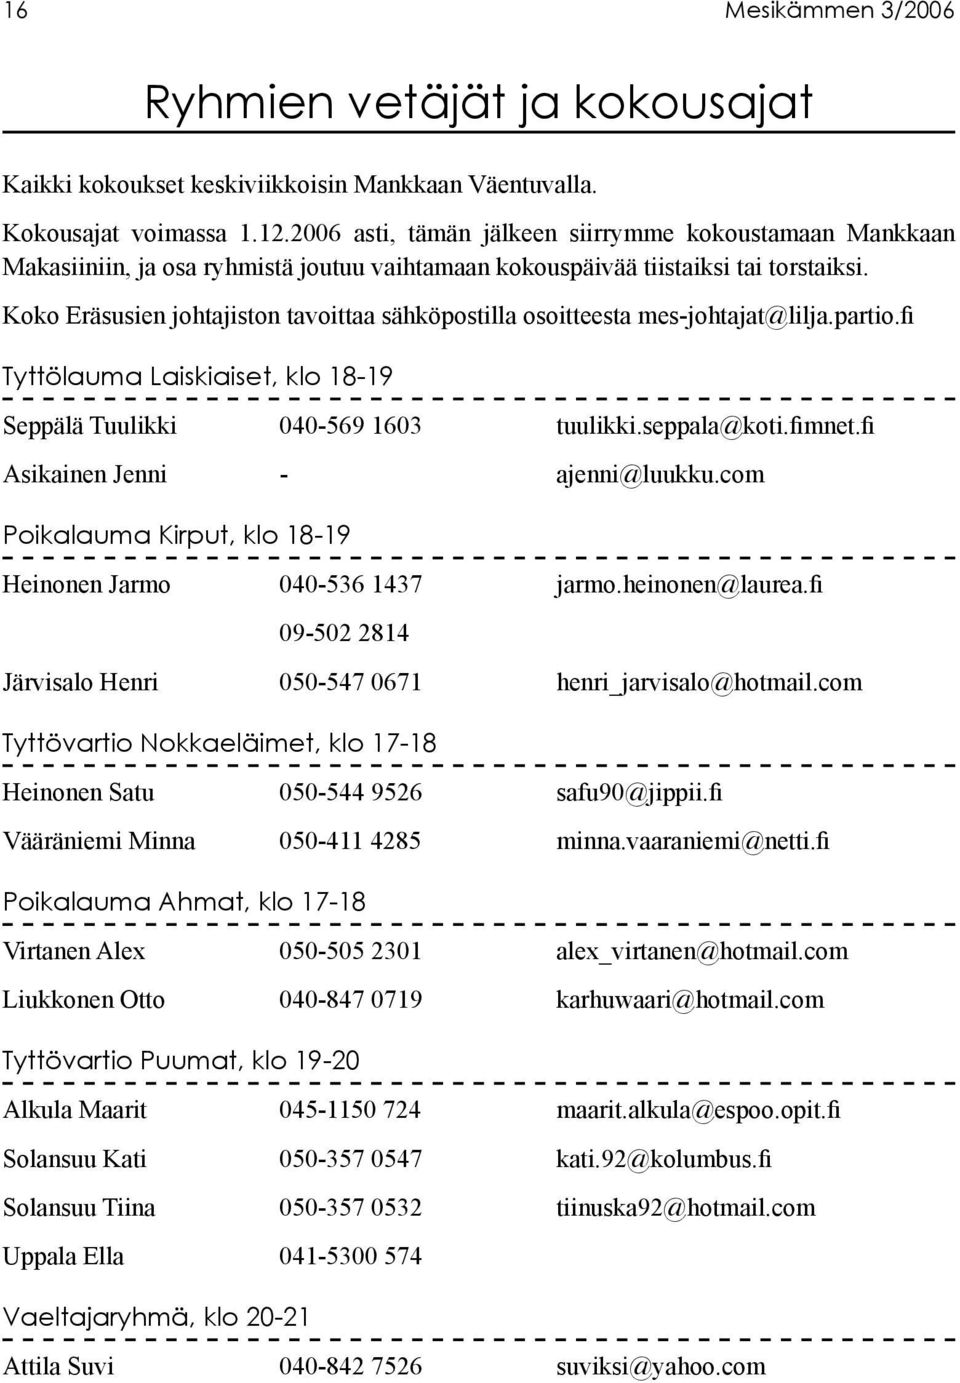 Koko Eräsusien johtajiston tavoittaa sähköpostilla osoitteesta mes-johtajat@lilja.partio.fi Tyttölauma Laiskiaiset, klo 18-19 Seppälä Tuulikki 040-569 1603 tuulikki.seppala@koti.fimnet.